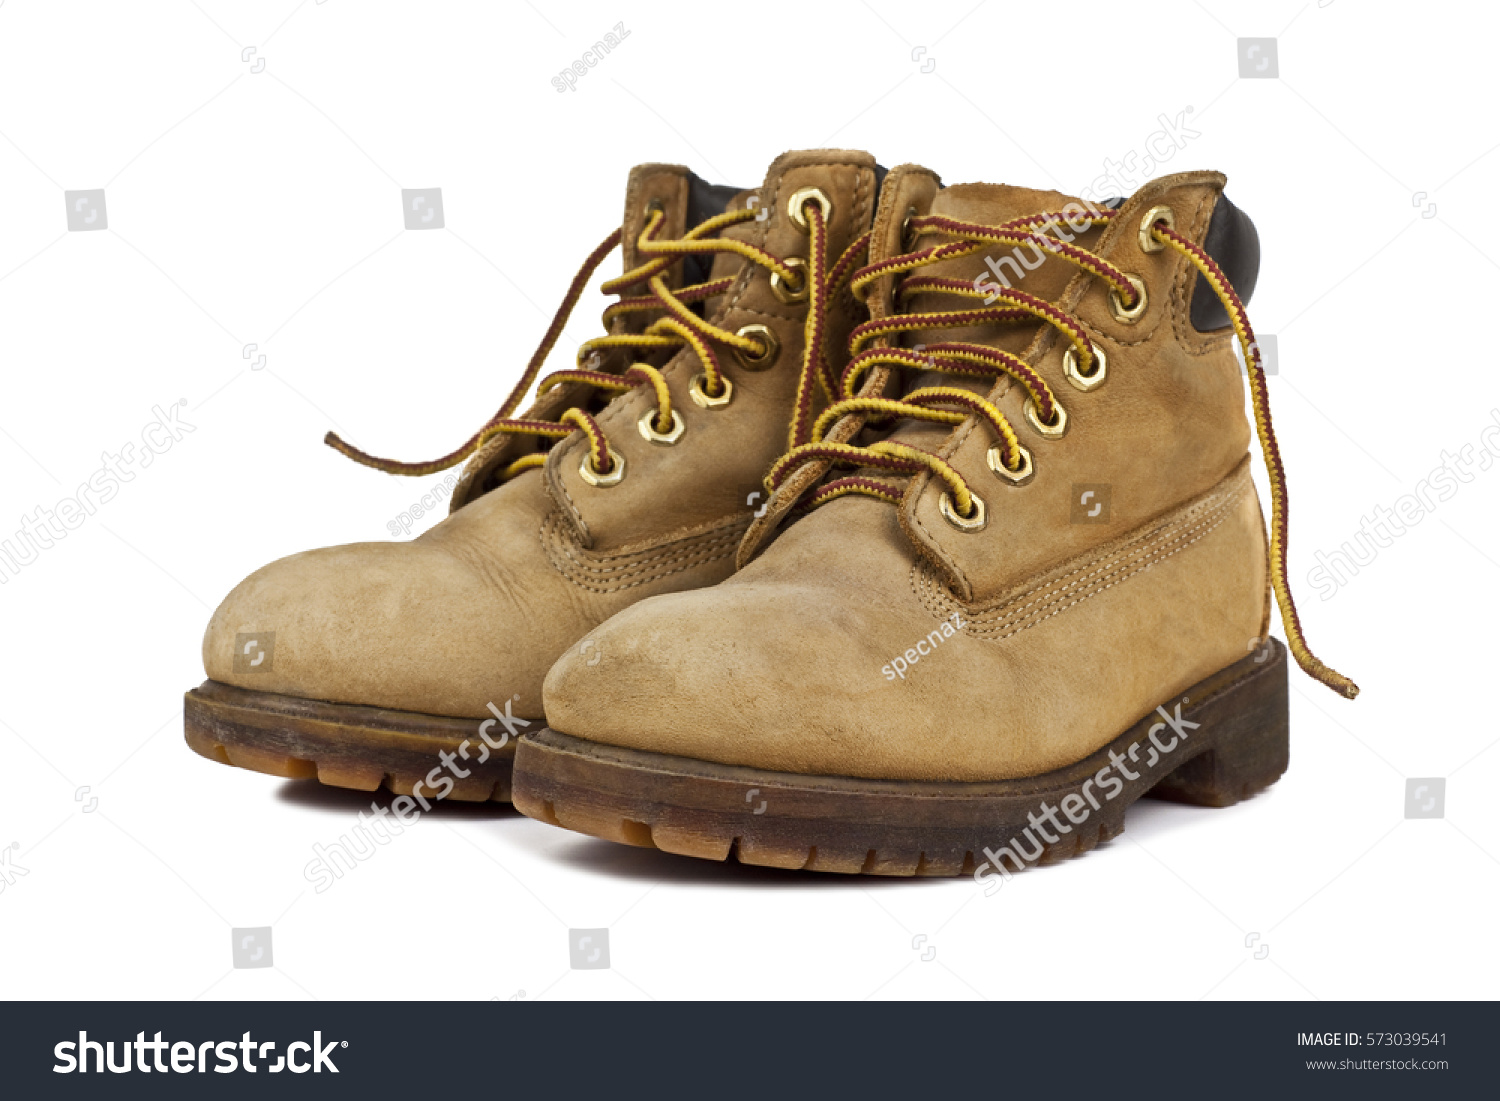 children hiking boots